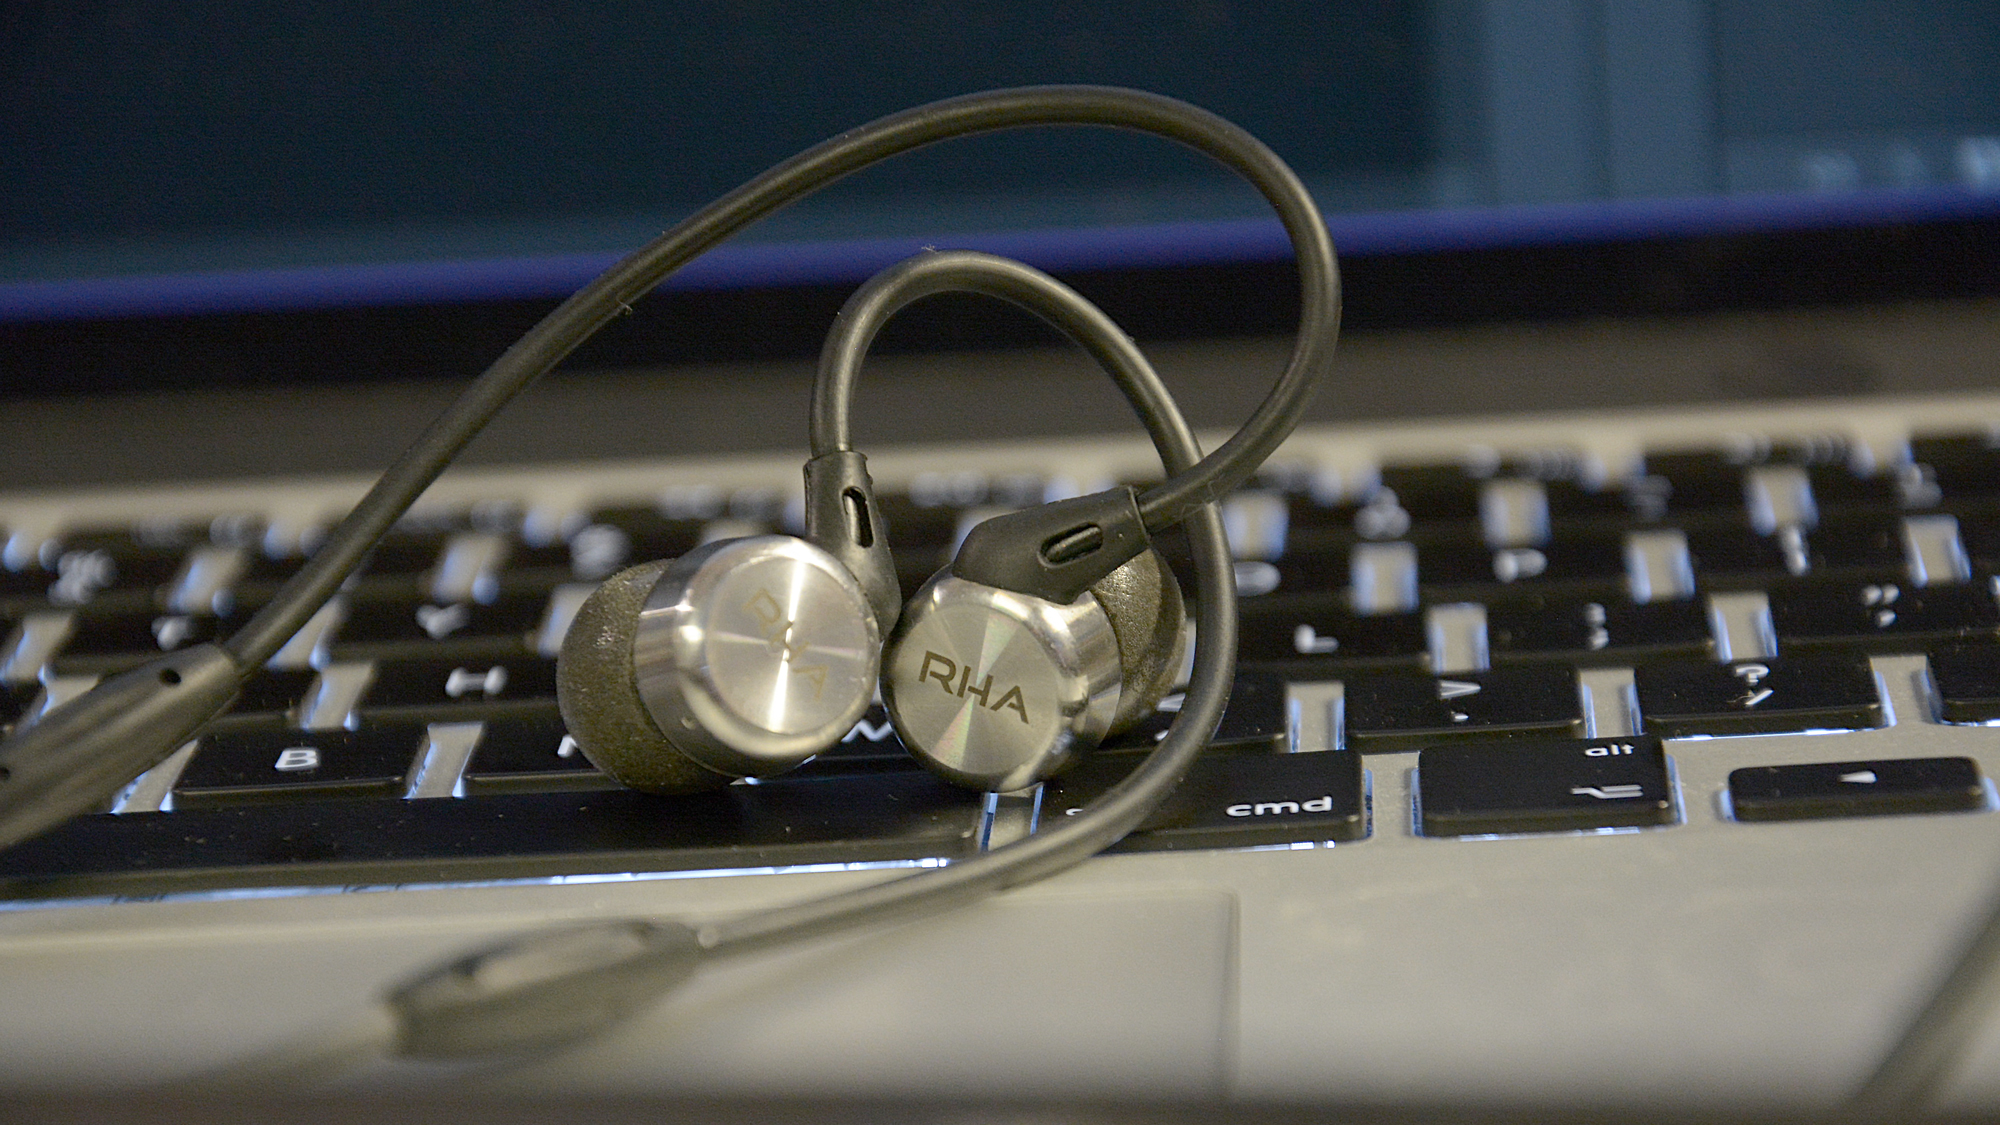 RHA MA750i: Najbolje slušalice za umetanje ispod 100 funti